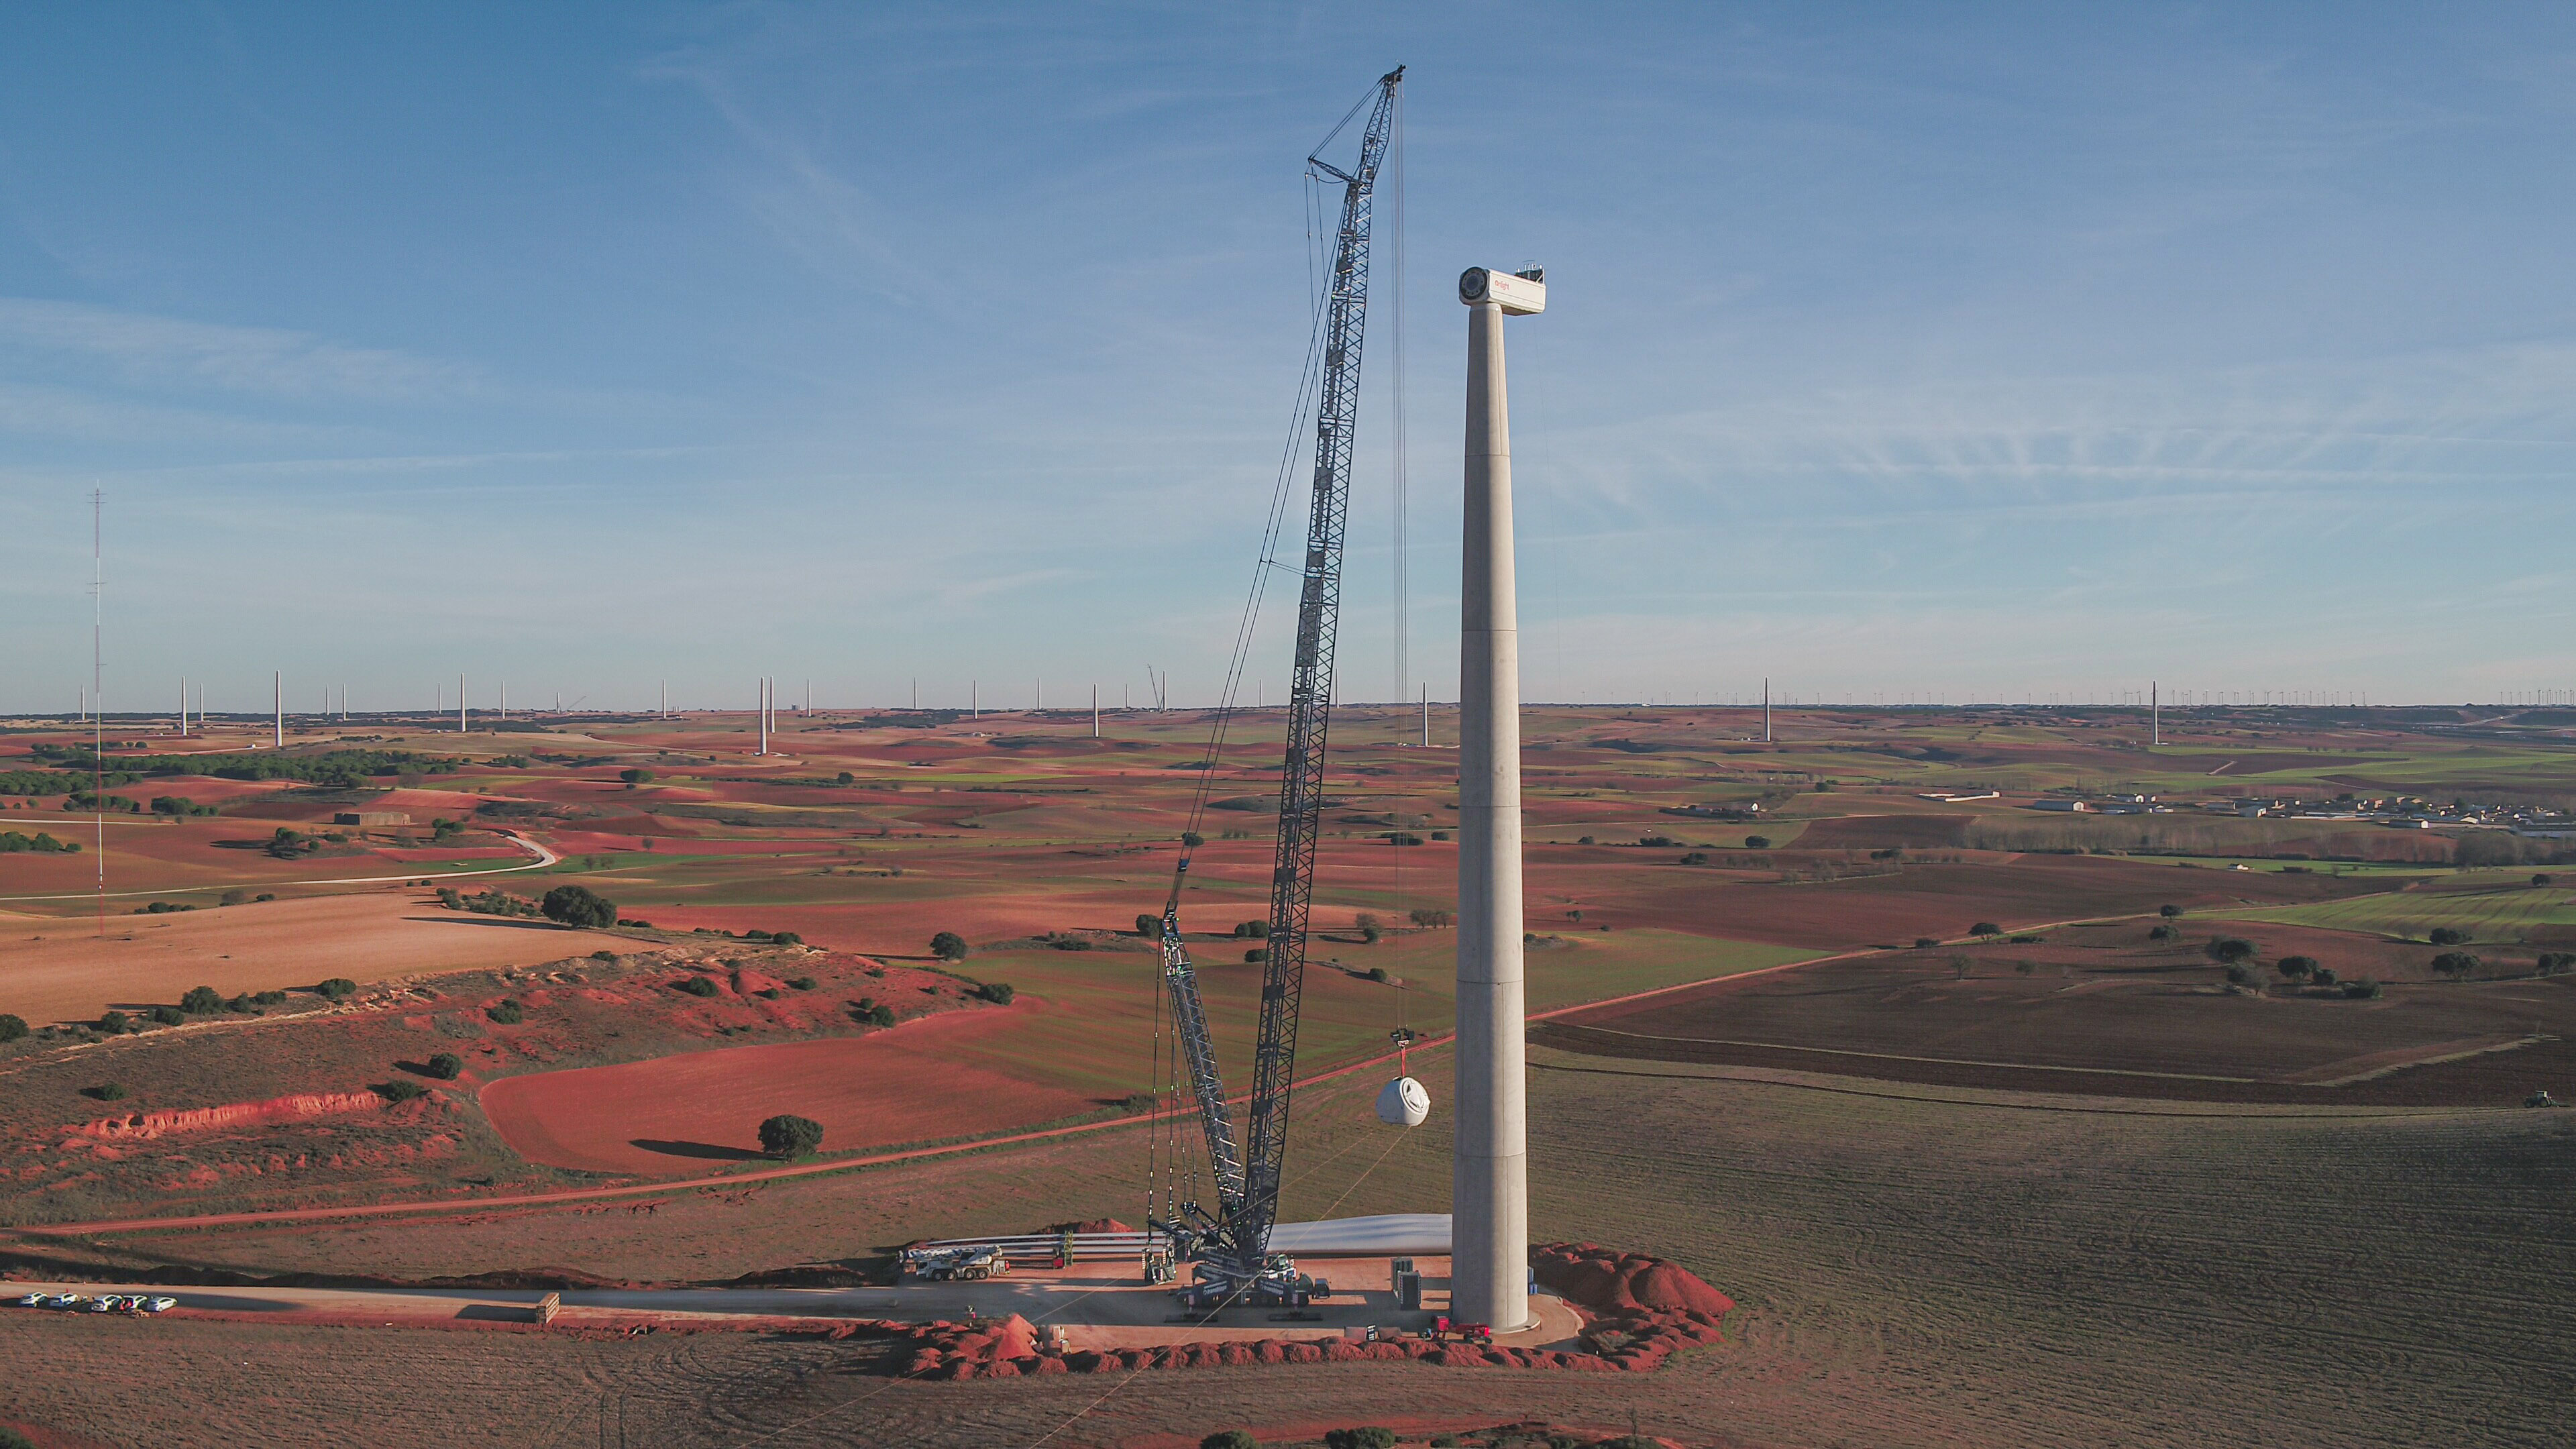 Drei LG 1750 von Transbiaga geben ihr Debüt im spanischen Windpark Gecama und errichten Windturbinen mit 120 Metern Nabenhöhe.